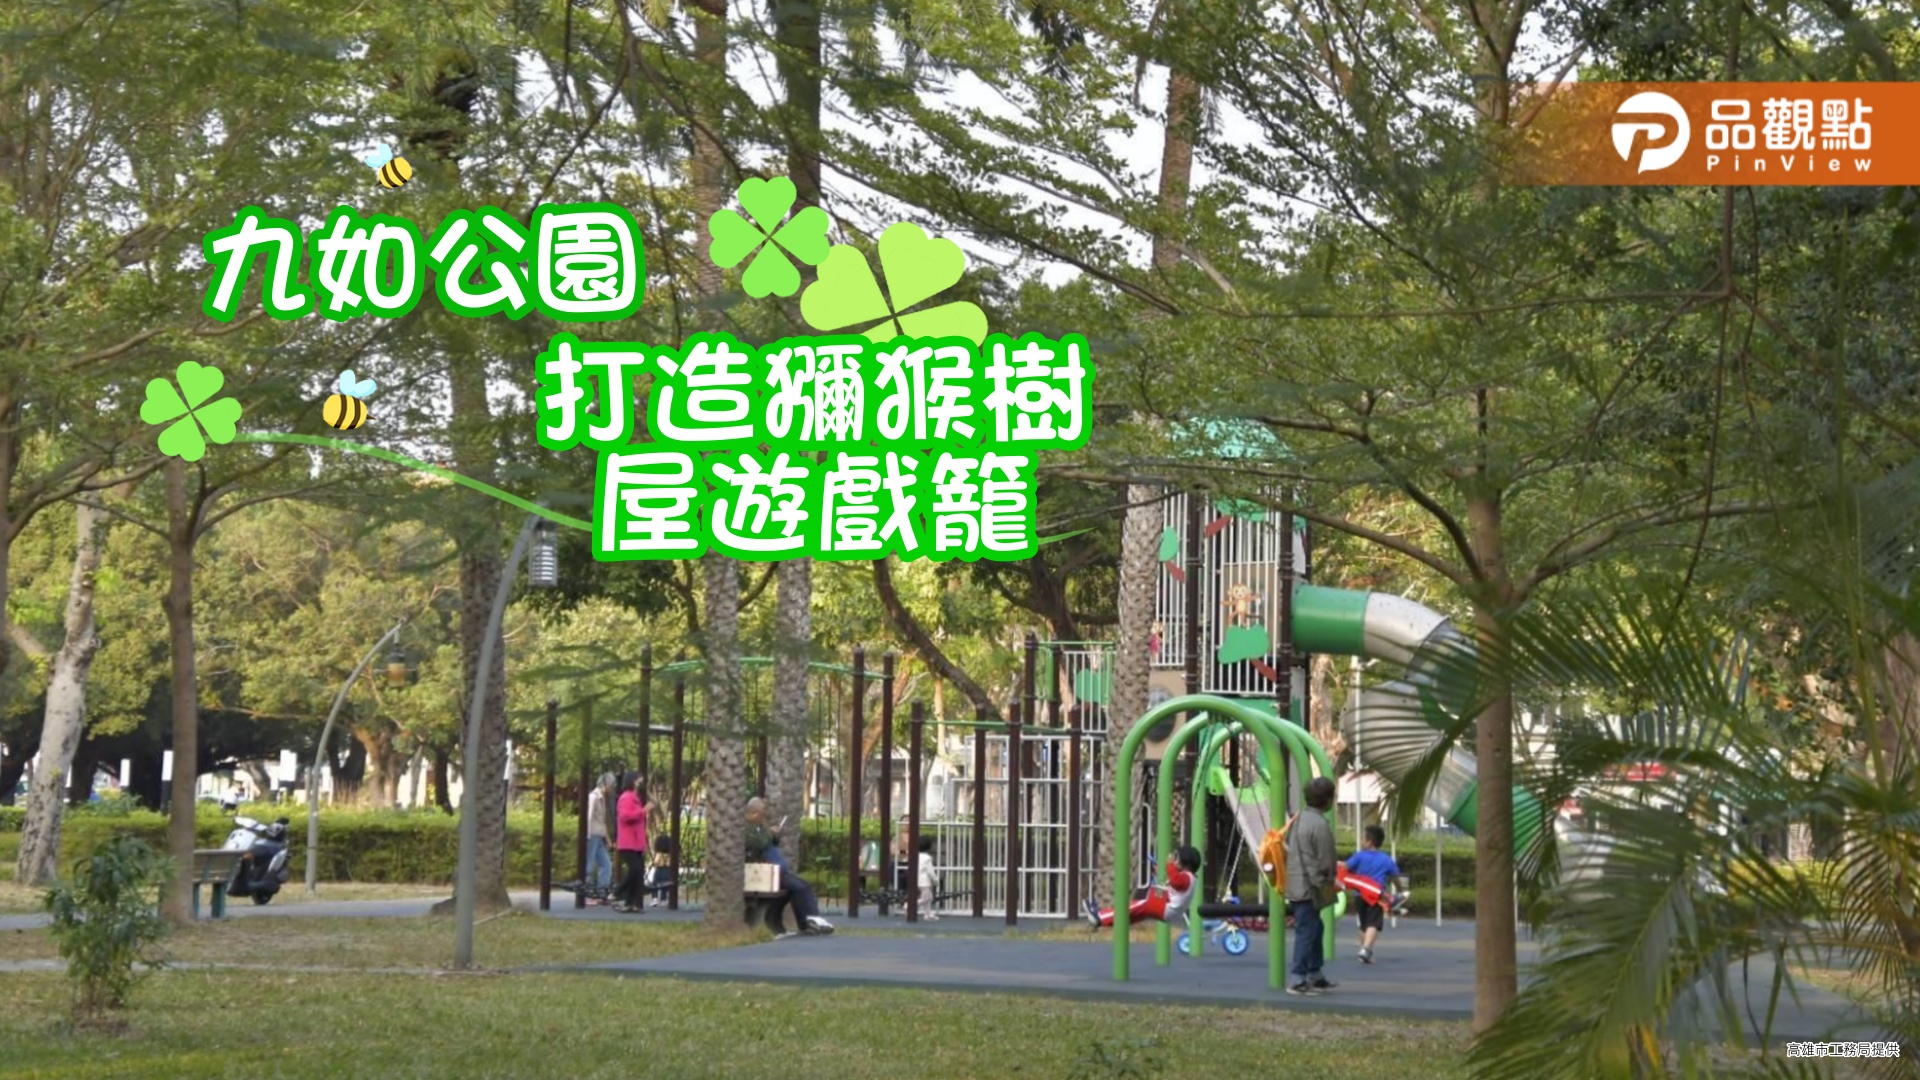 九如公園打造樹屋遊戲籠  模仿獼猴玩遊戲